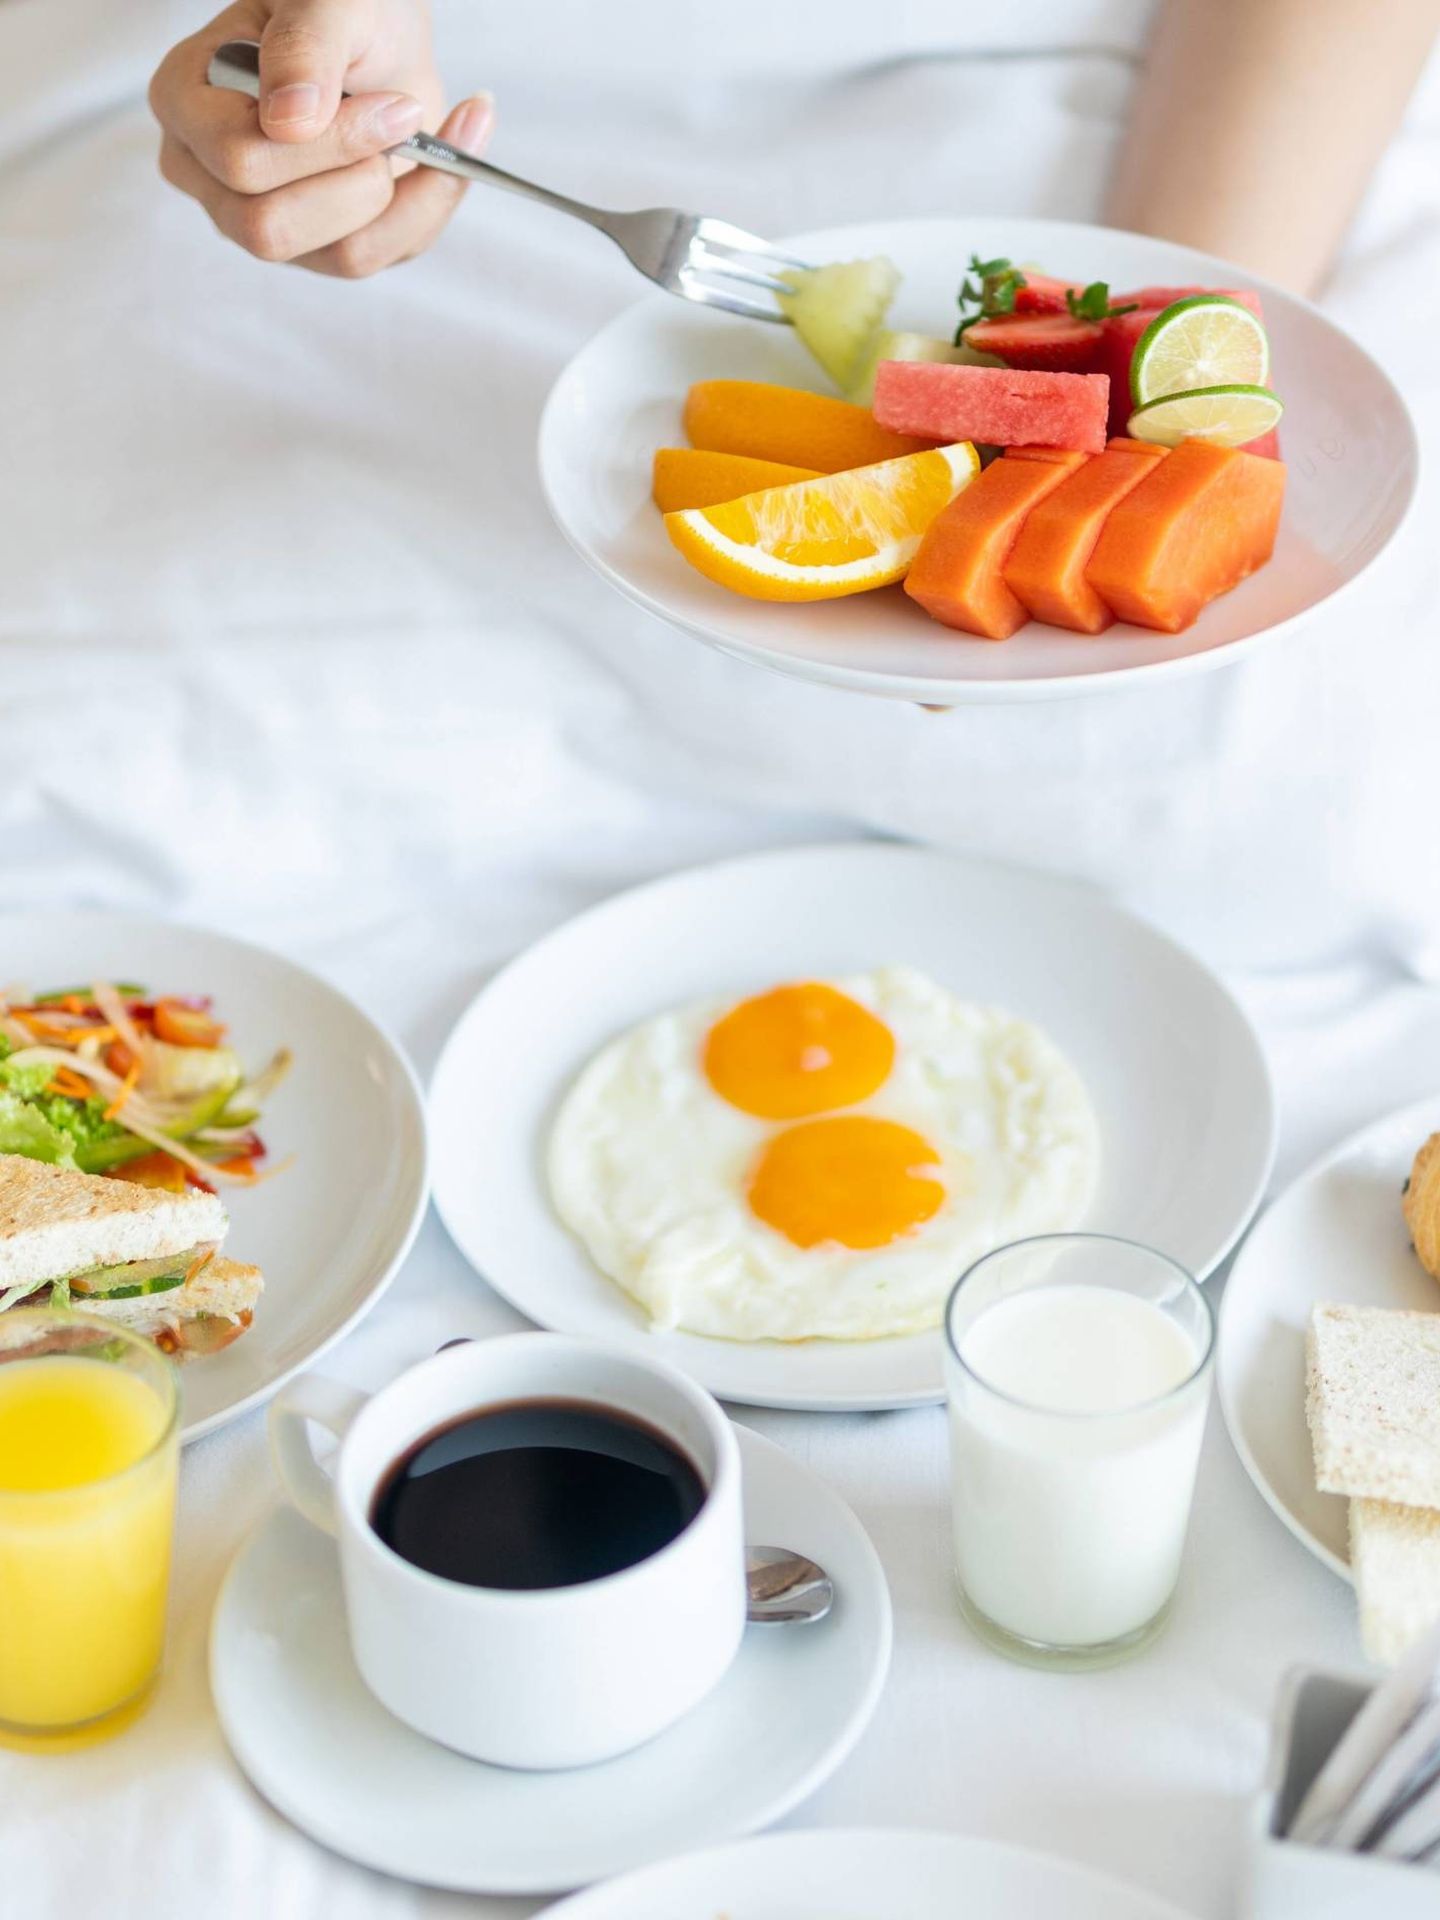 Desayunos saludables para empezar el día con energía. (Febrian Zakaria para Unsplash)